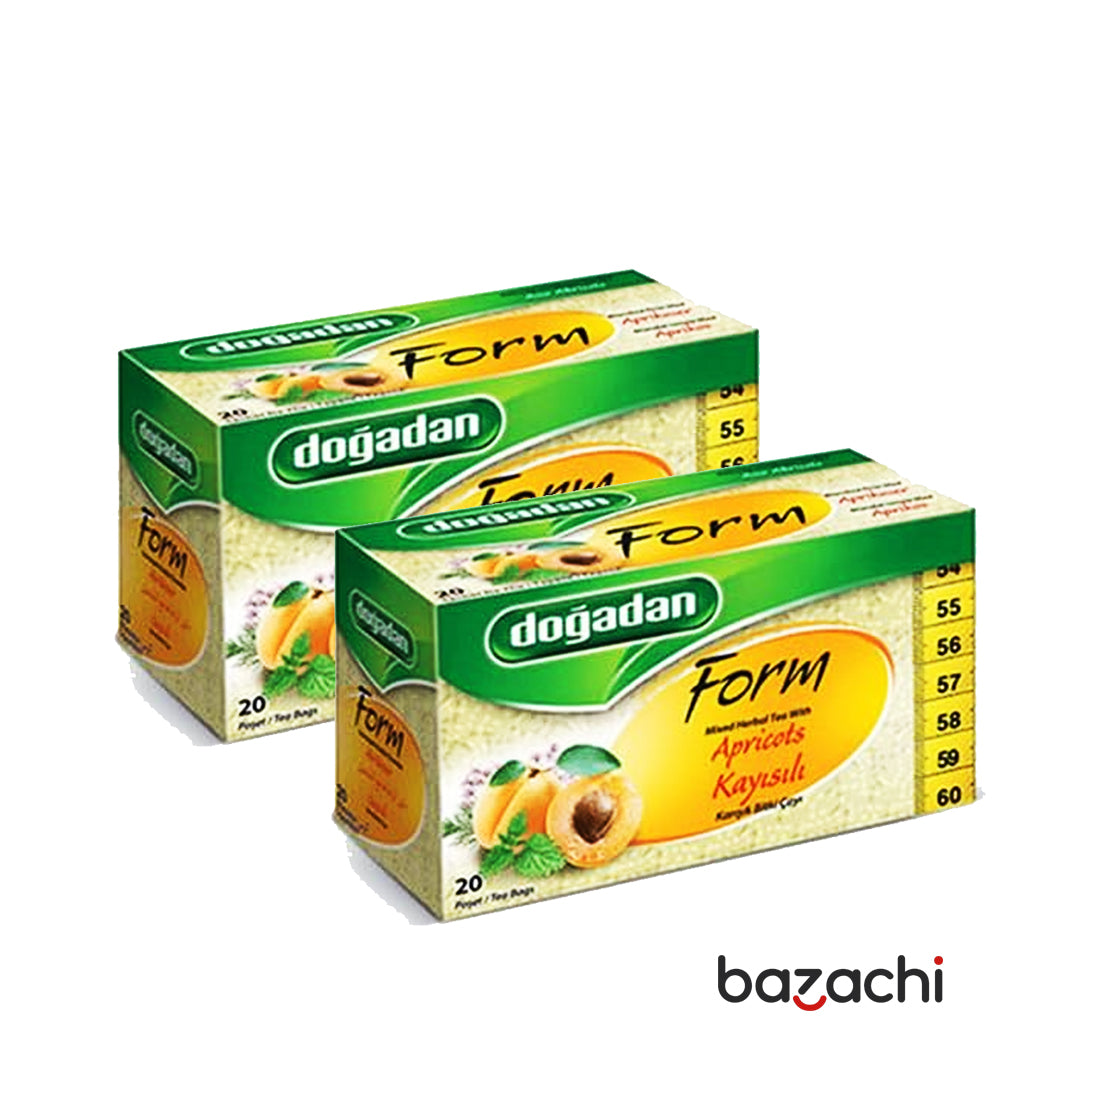 Dogadan Form Apricot Tea 20 Tea Bags